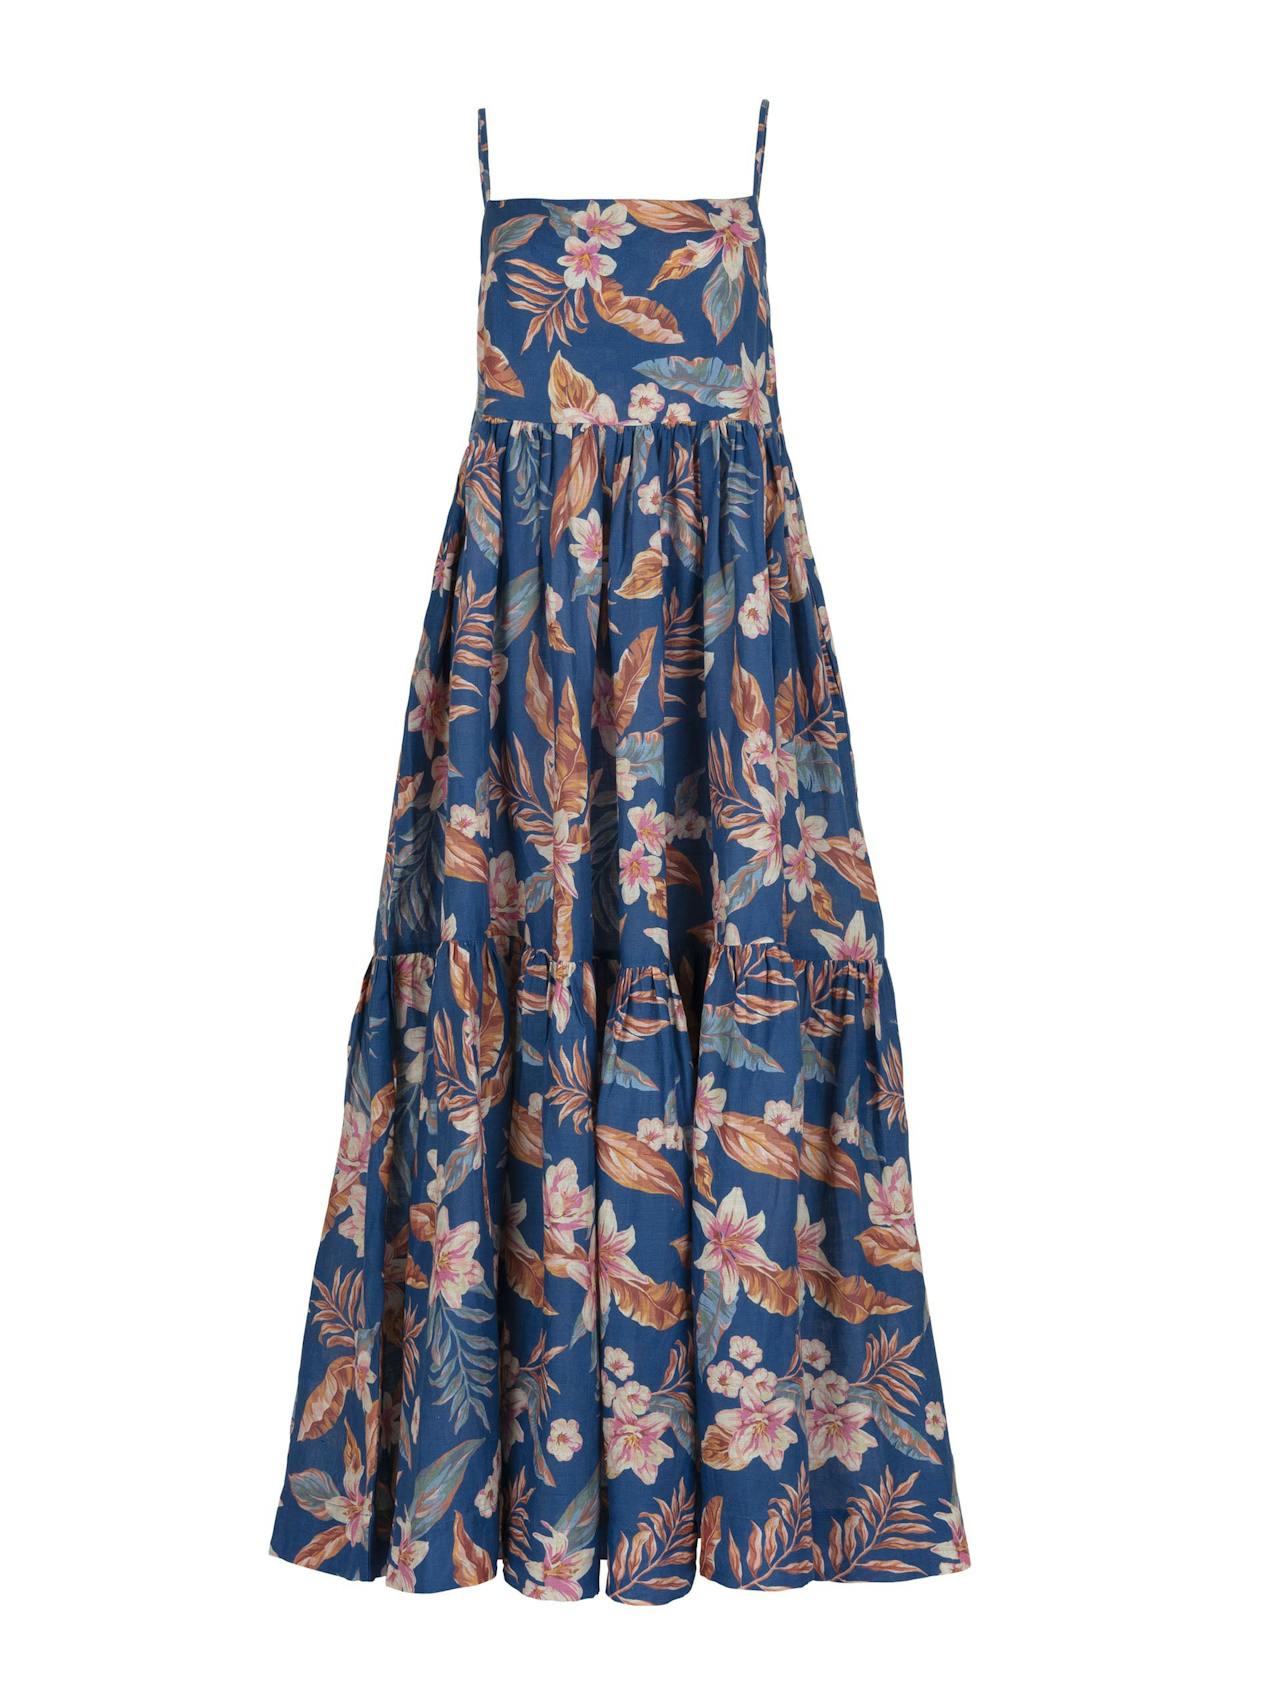 Dorothy hibiscus linen dress